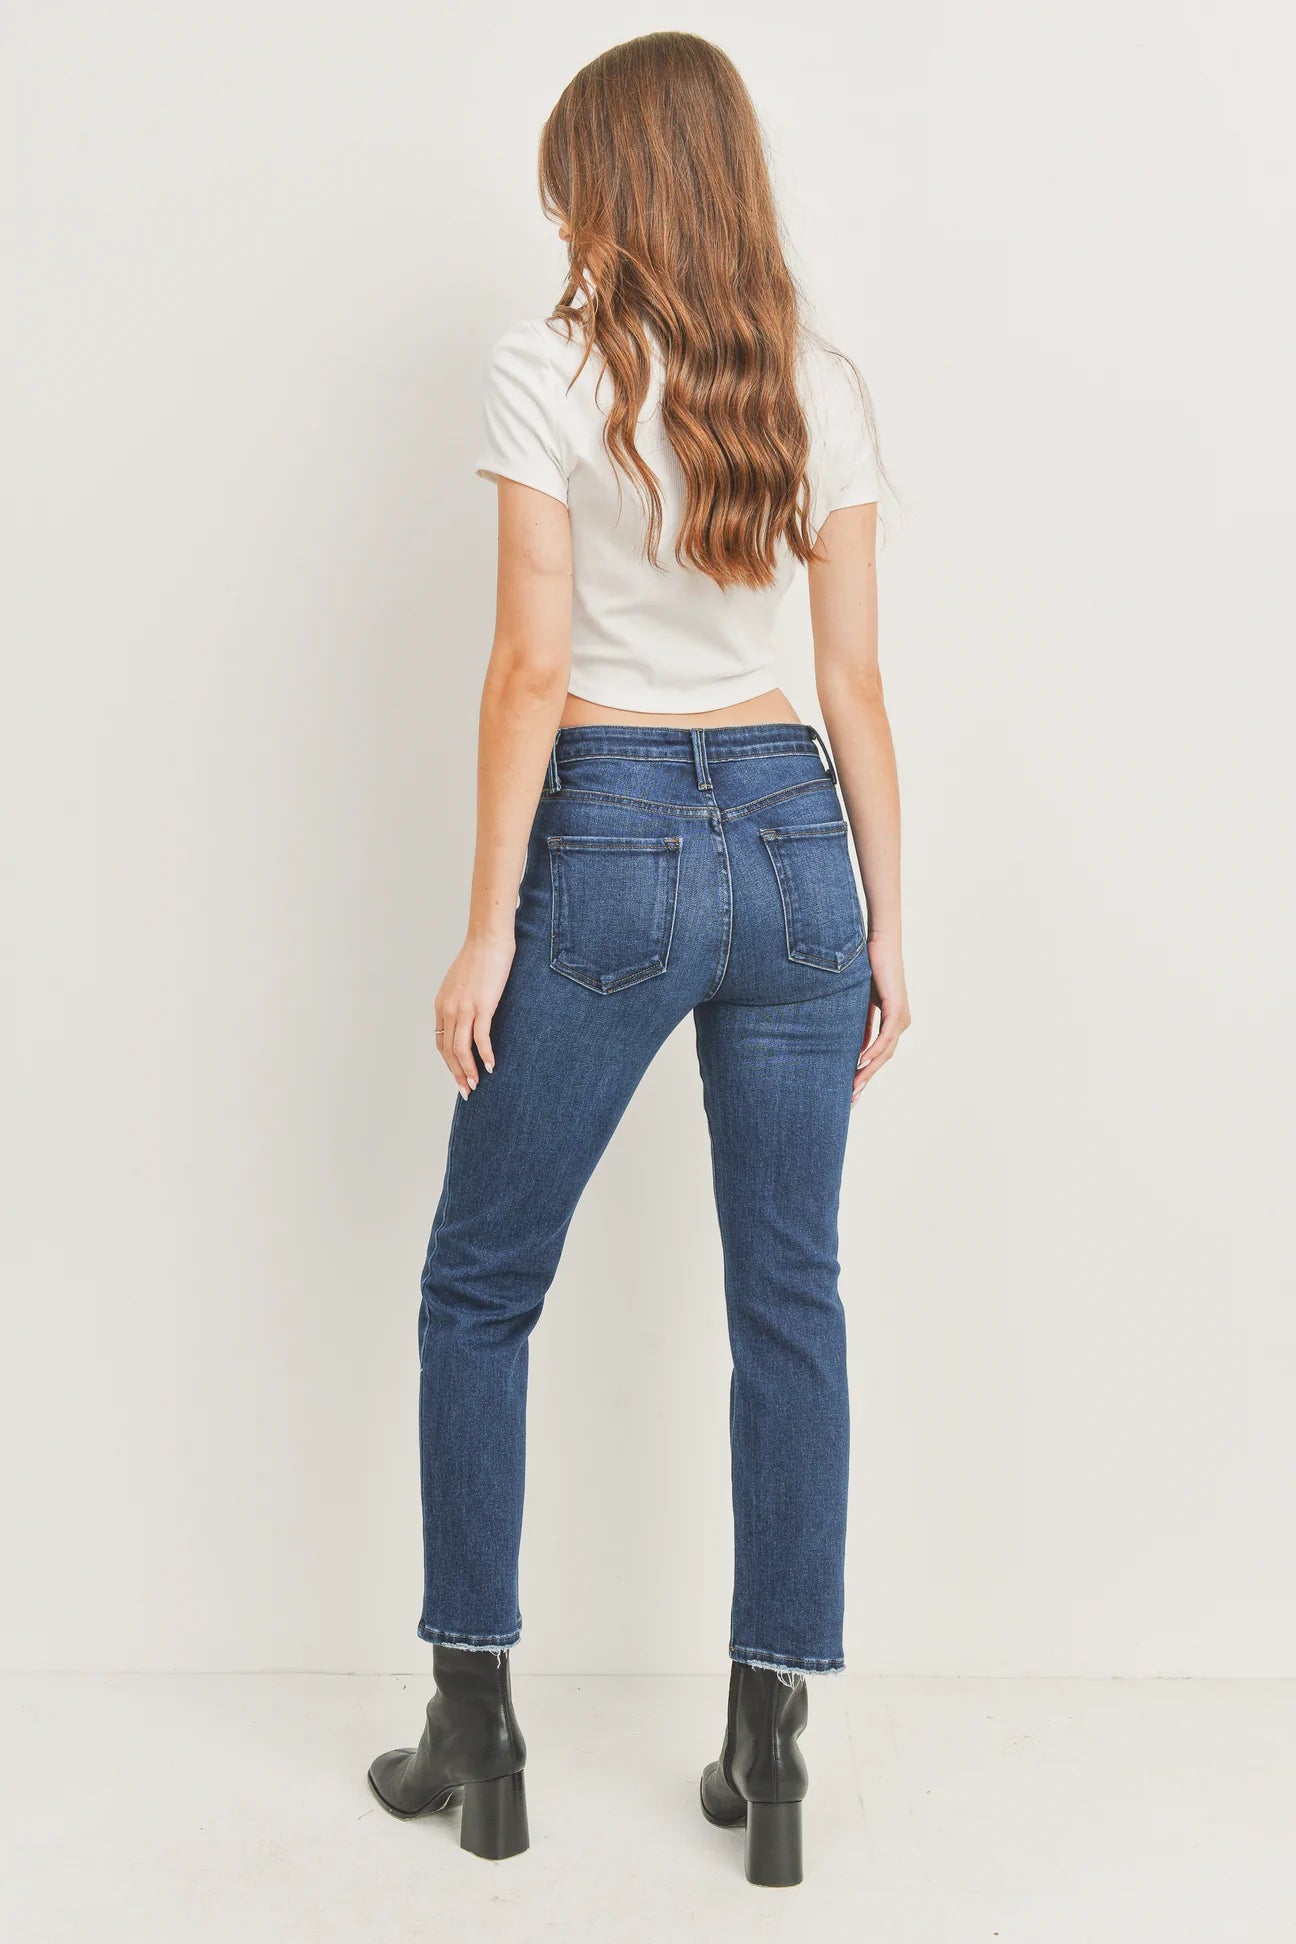 Denim & Co. Women's Jeans for sale | eBay